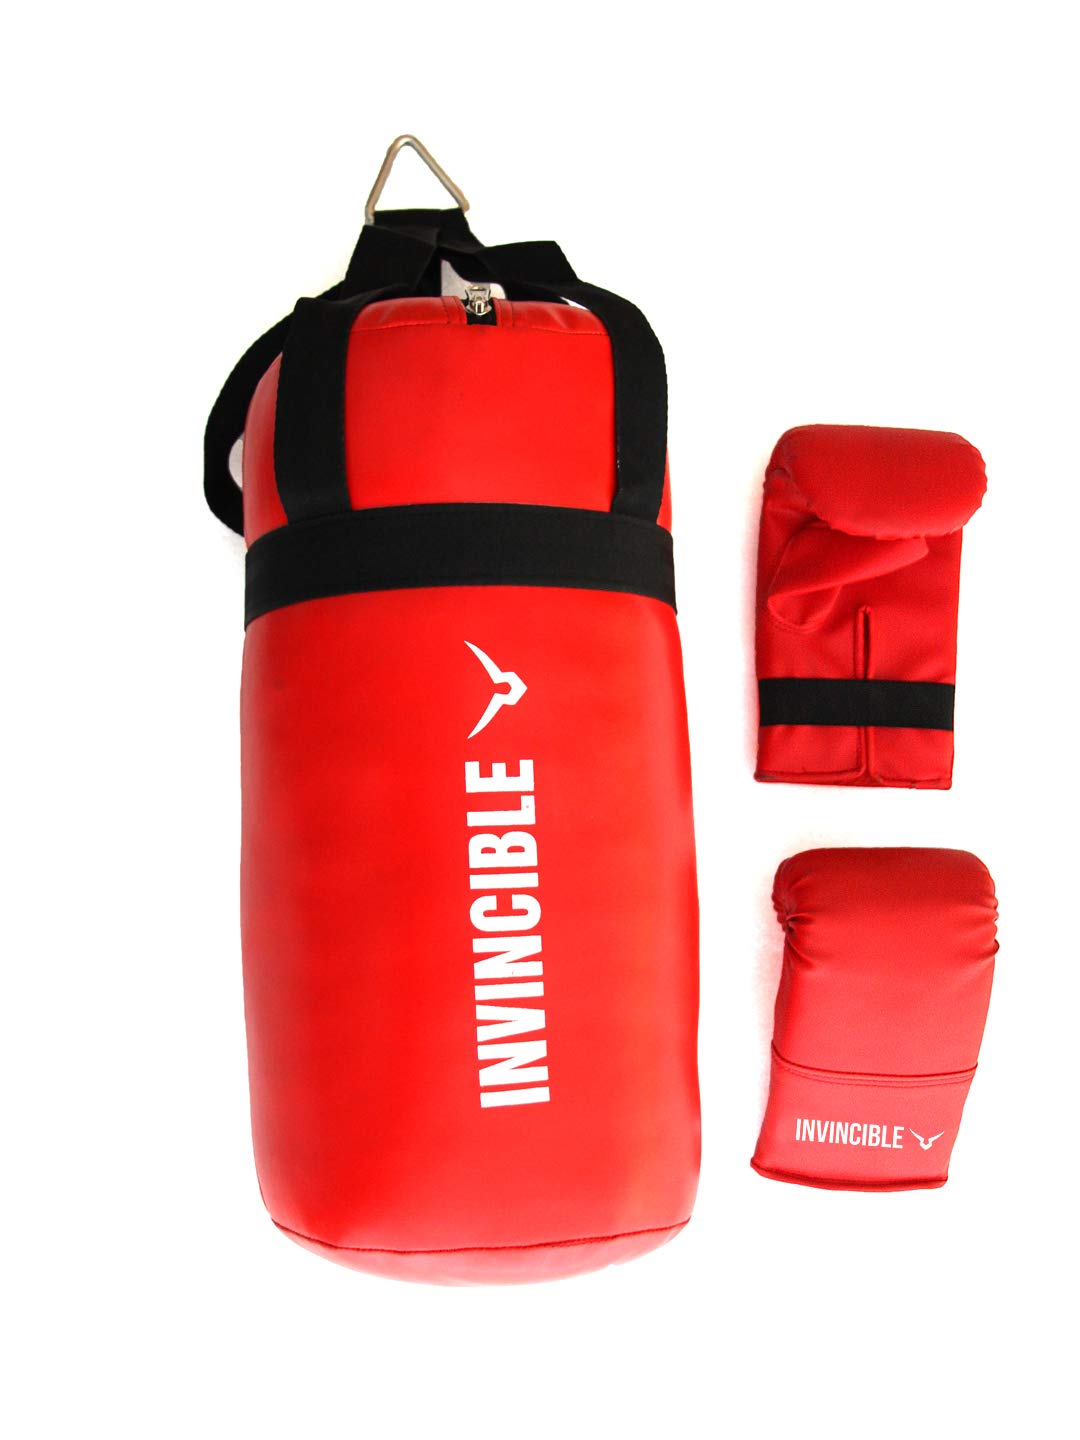 Invincible Kids Boxing Kit